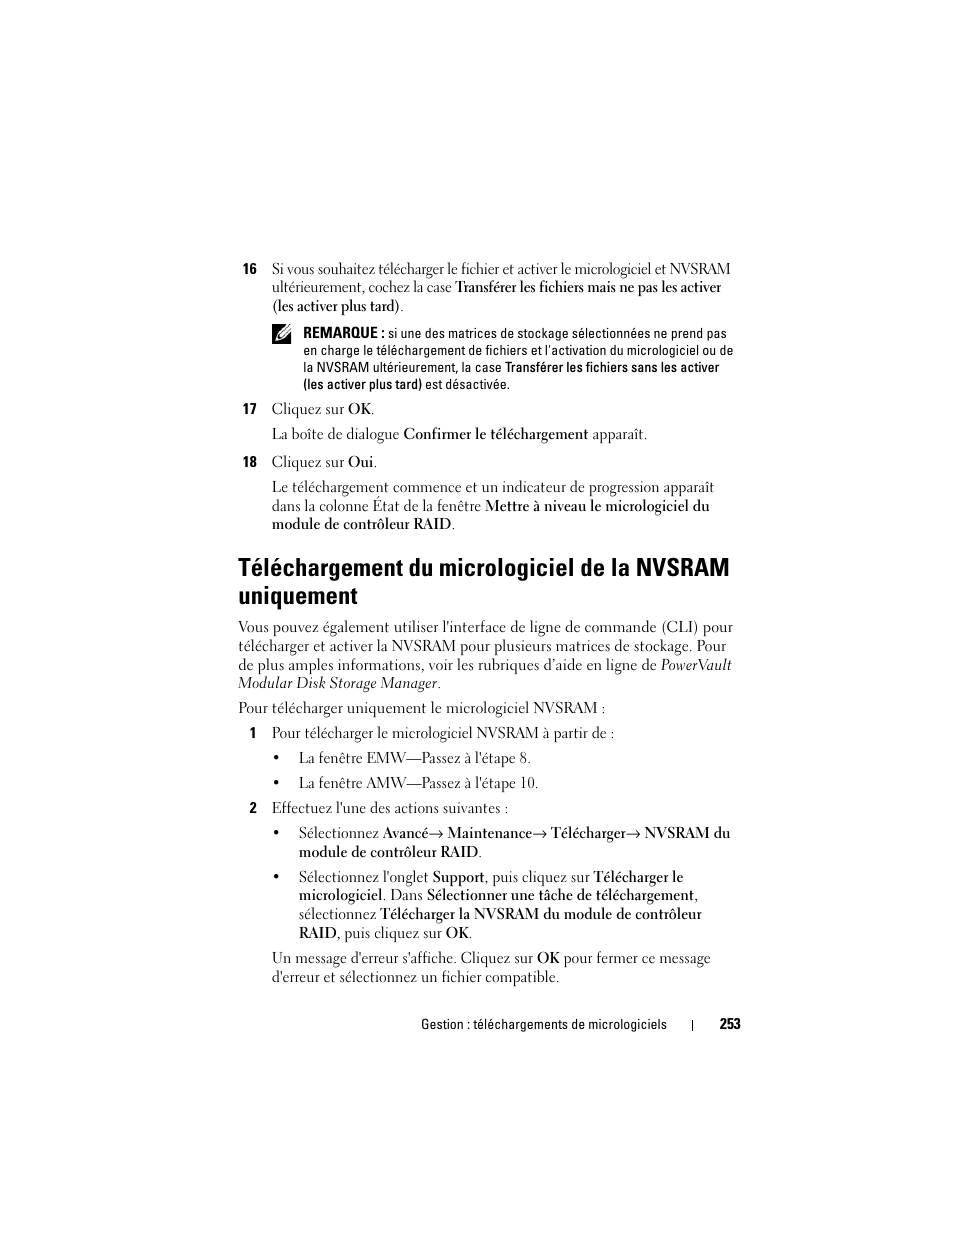 Téléchargement du micrologiciel de la nvsram, Uniquement | Dell POWERVAULT MD3600F Manuel d'utilisation | Page 253 / 344